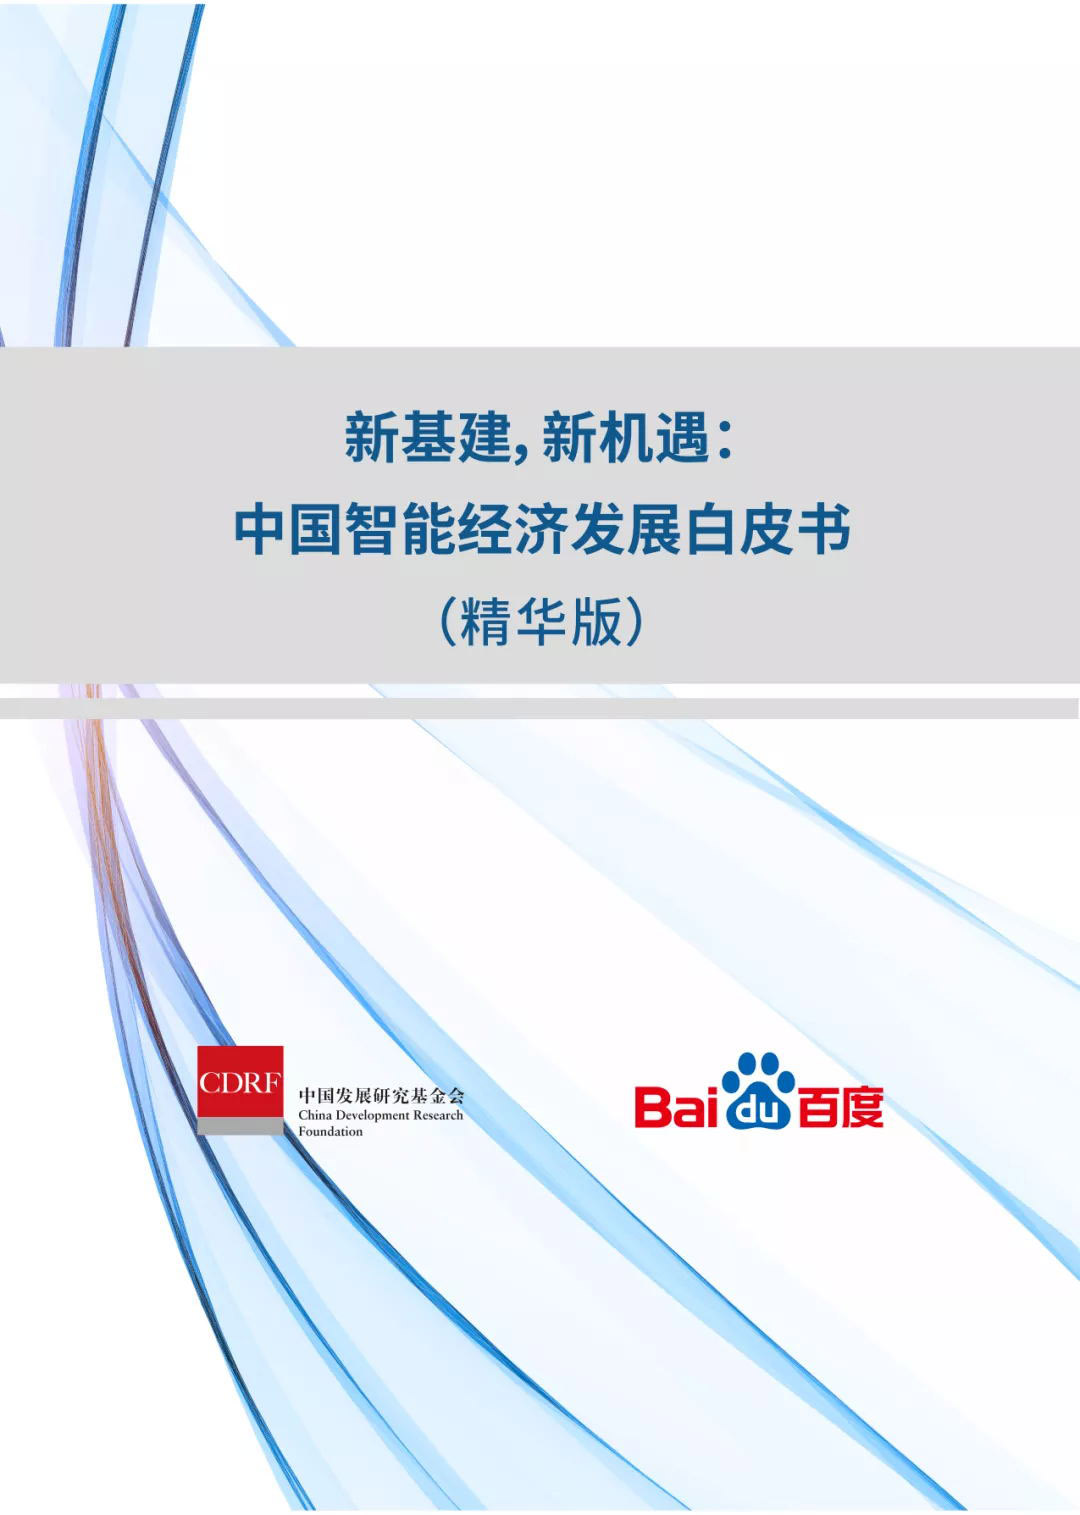 中国发展研究基金会联合百度重磅发布《中国智能经济发展白皮书》(图1)